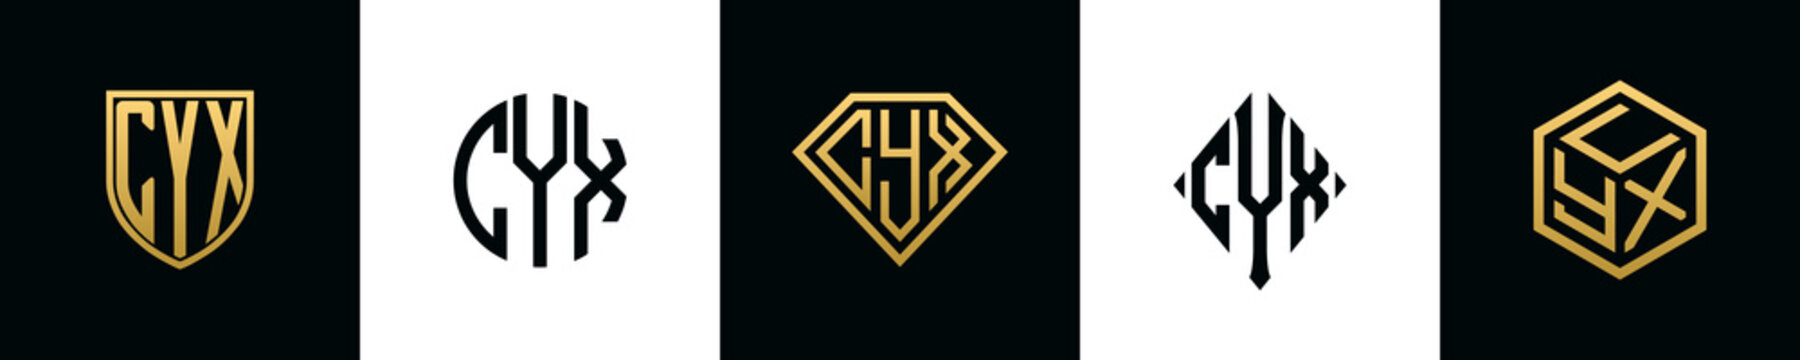 Initial letters CYX logo designs Bundle